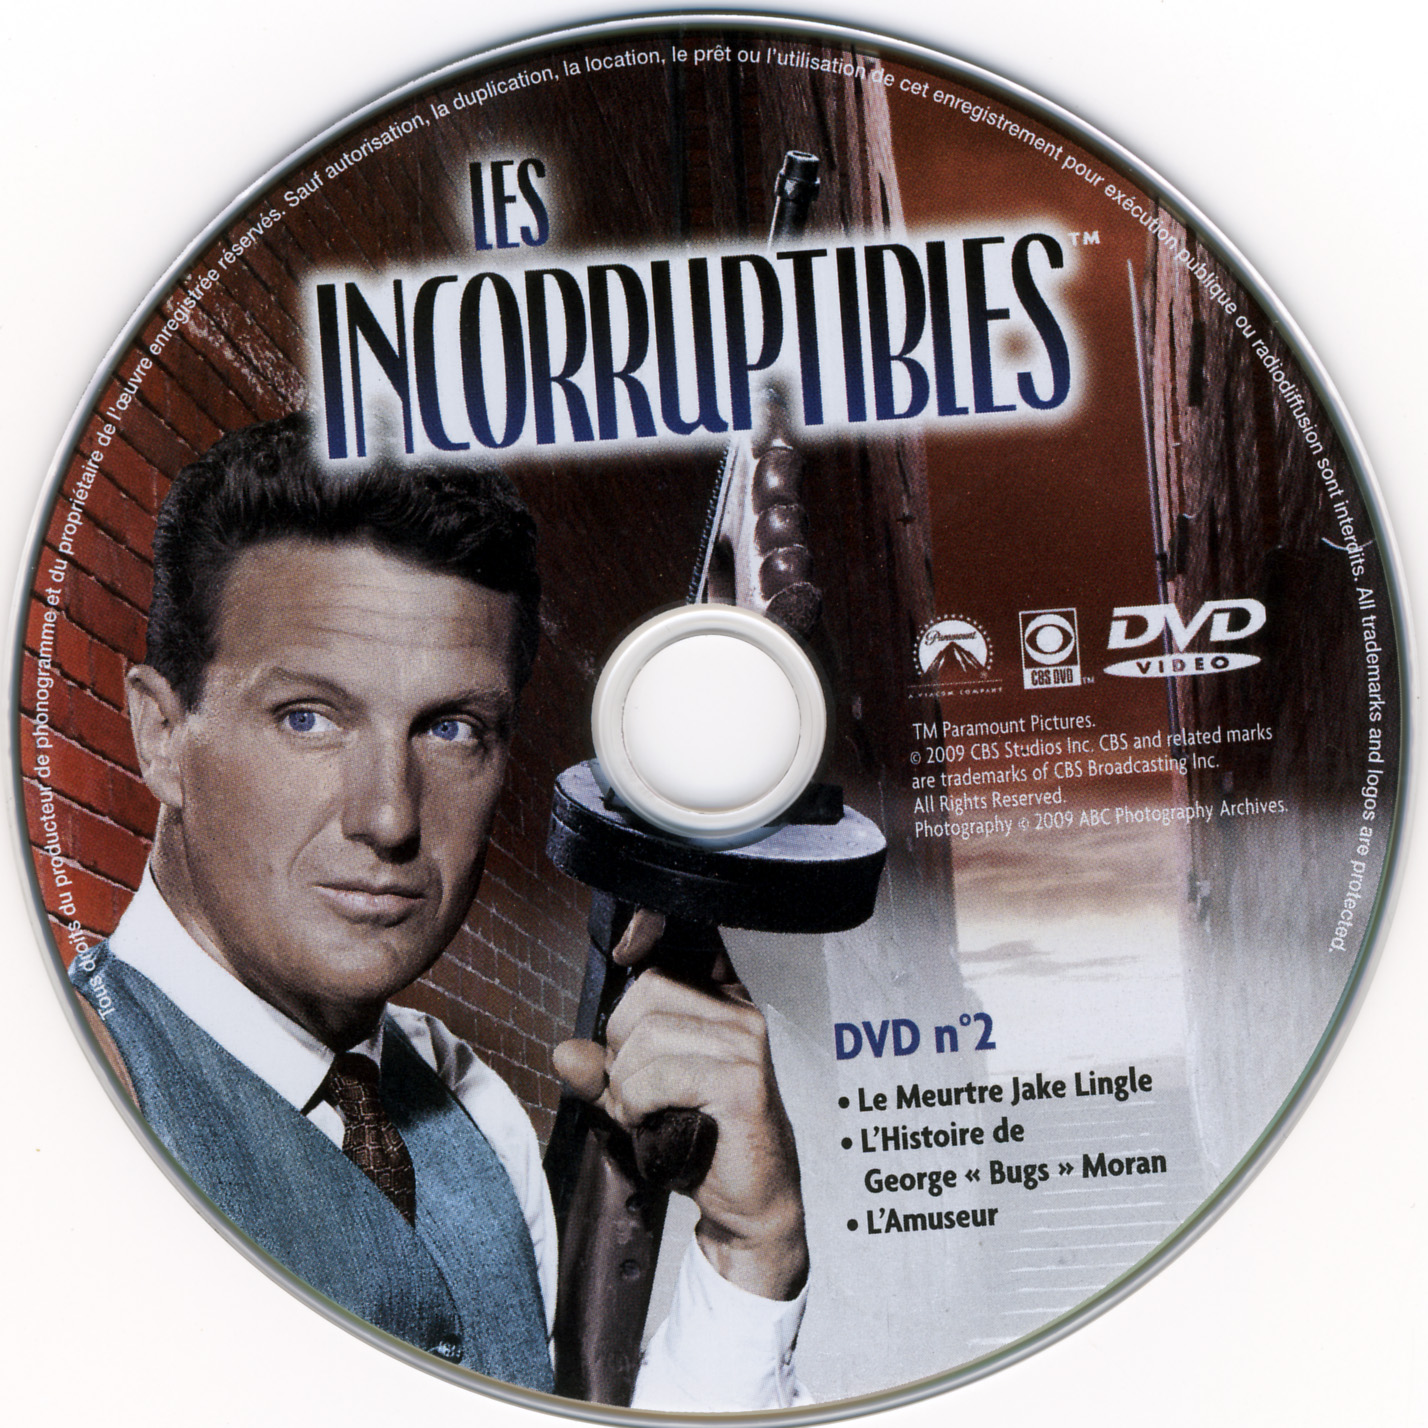 Les incorruptibles intgrale DVD 02